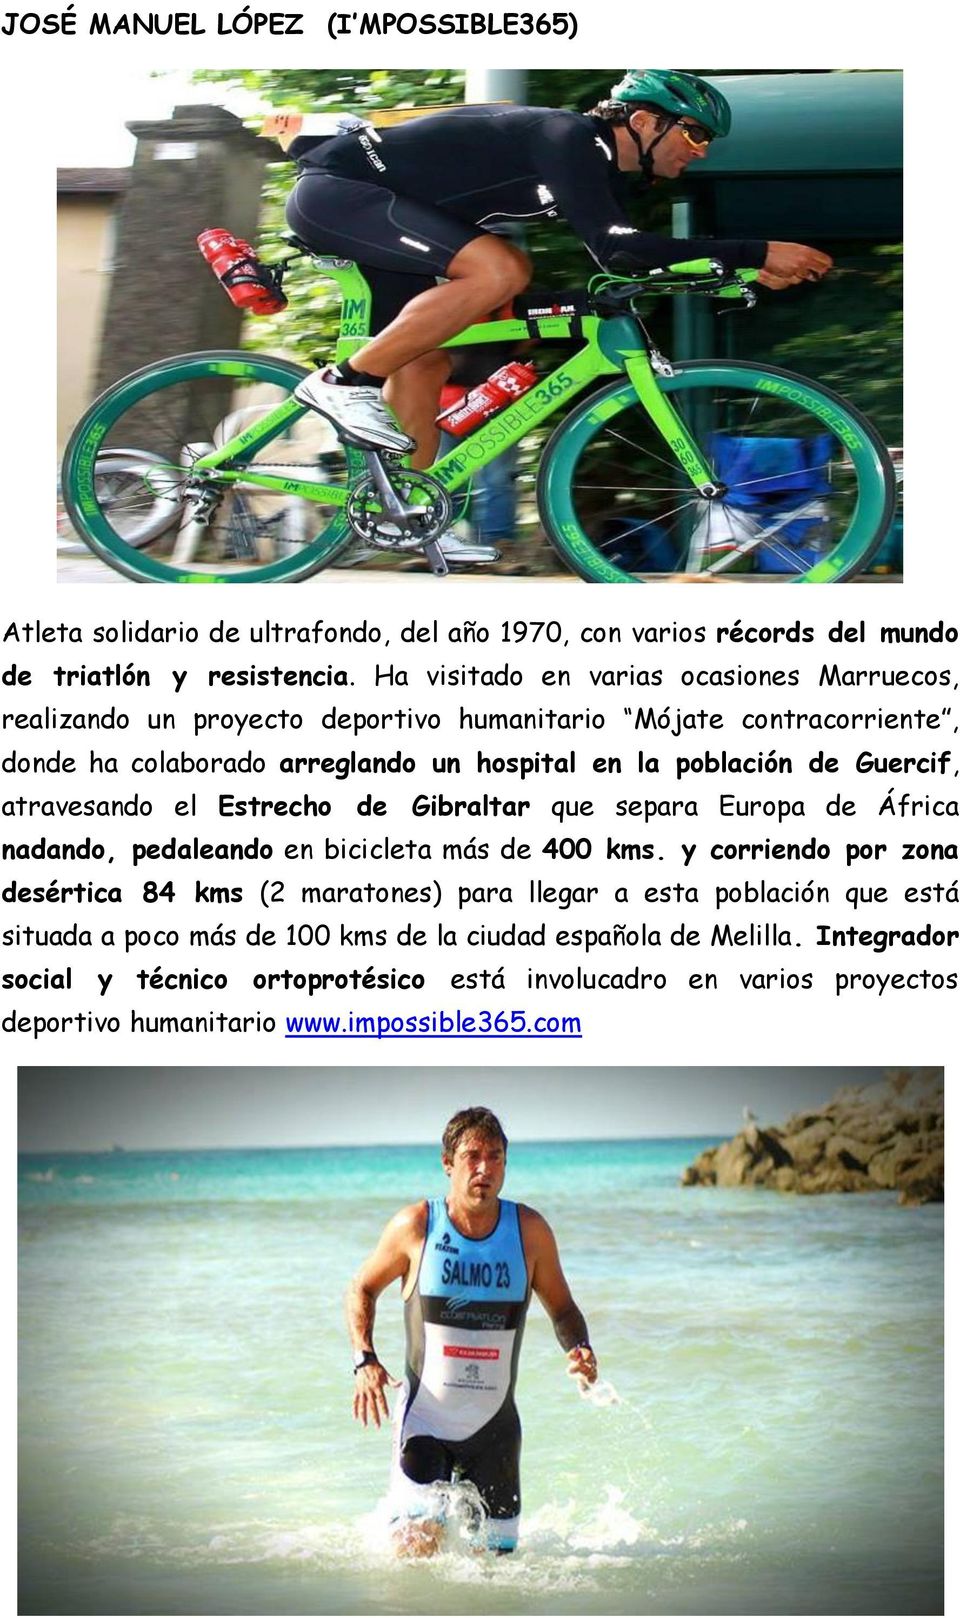 Guercif, atravesando el Estrecho de Gibraltar que separa Europa de África nadando, pedaleando en bicicleta más de 400 kms.